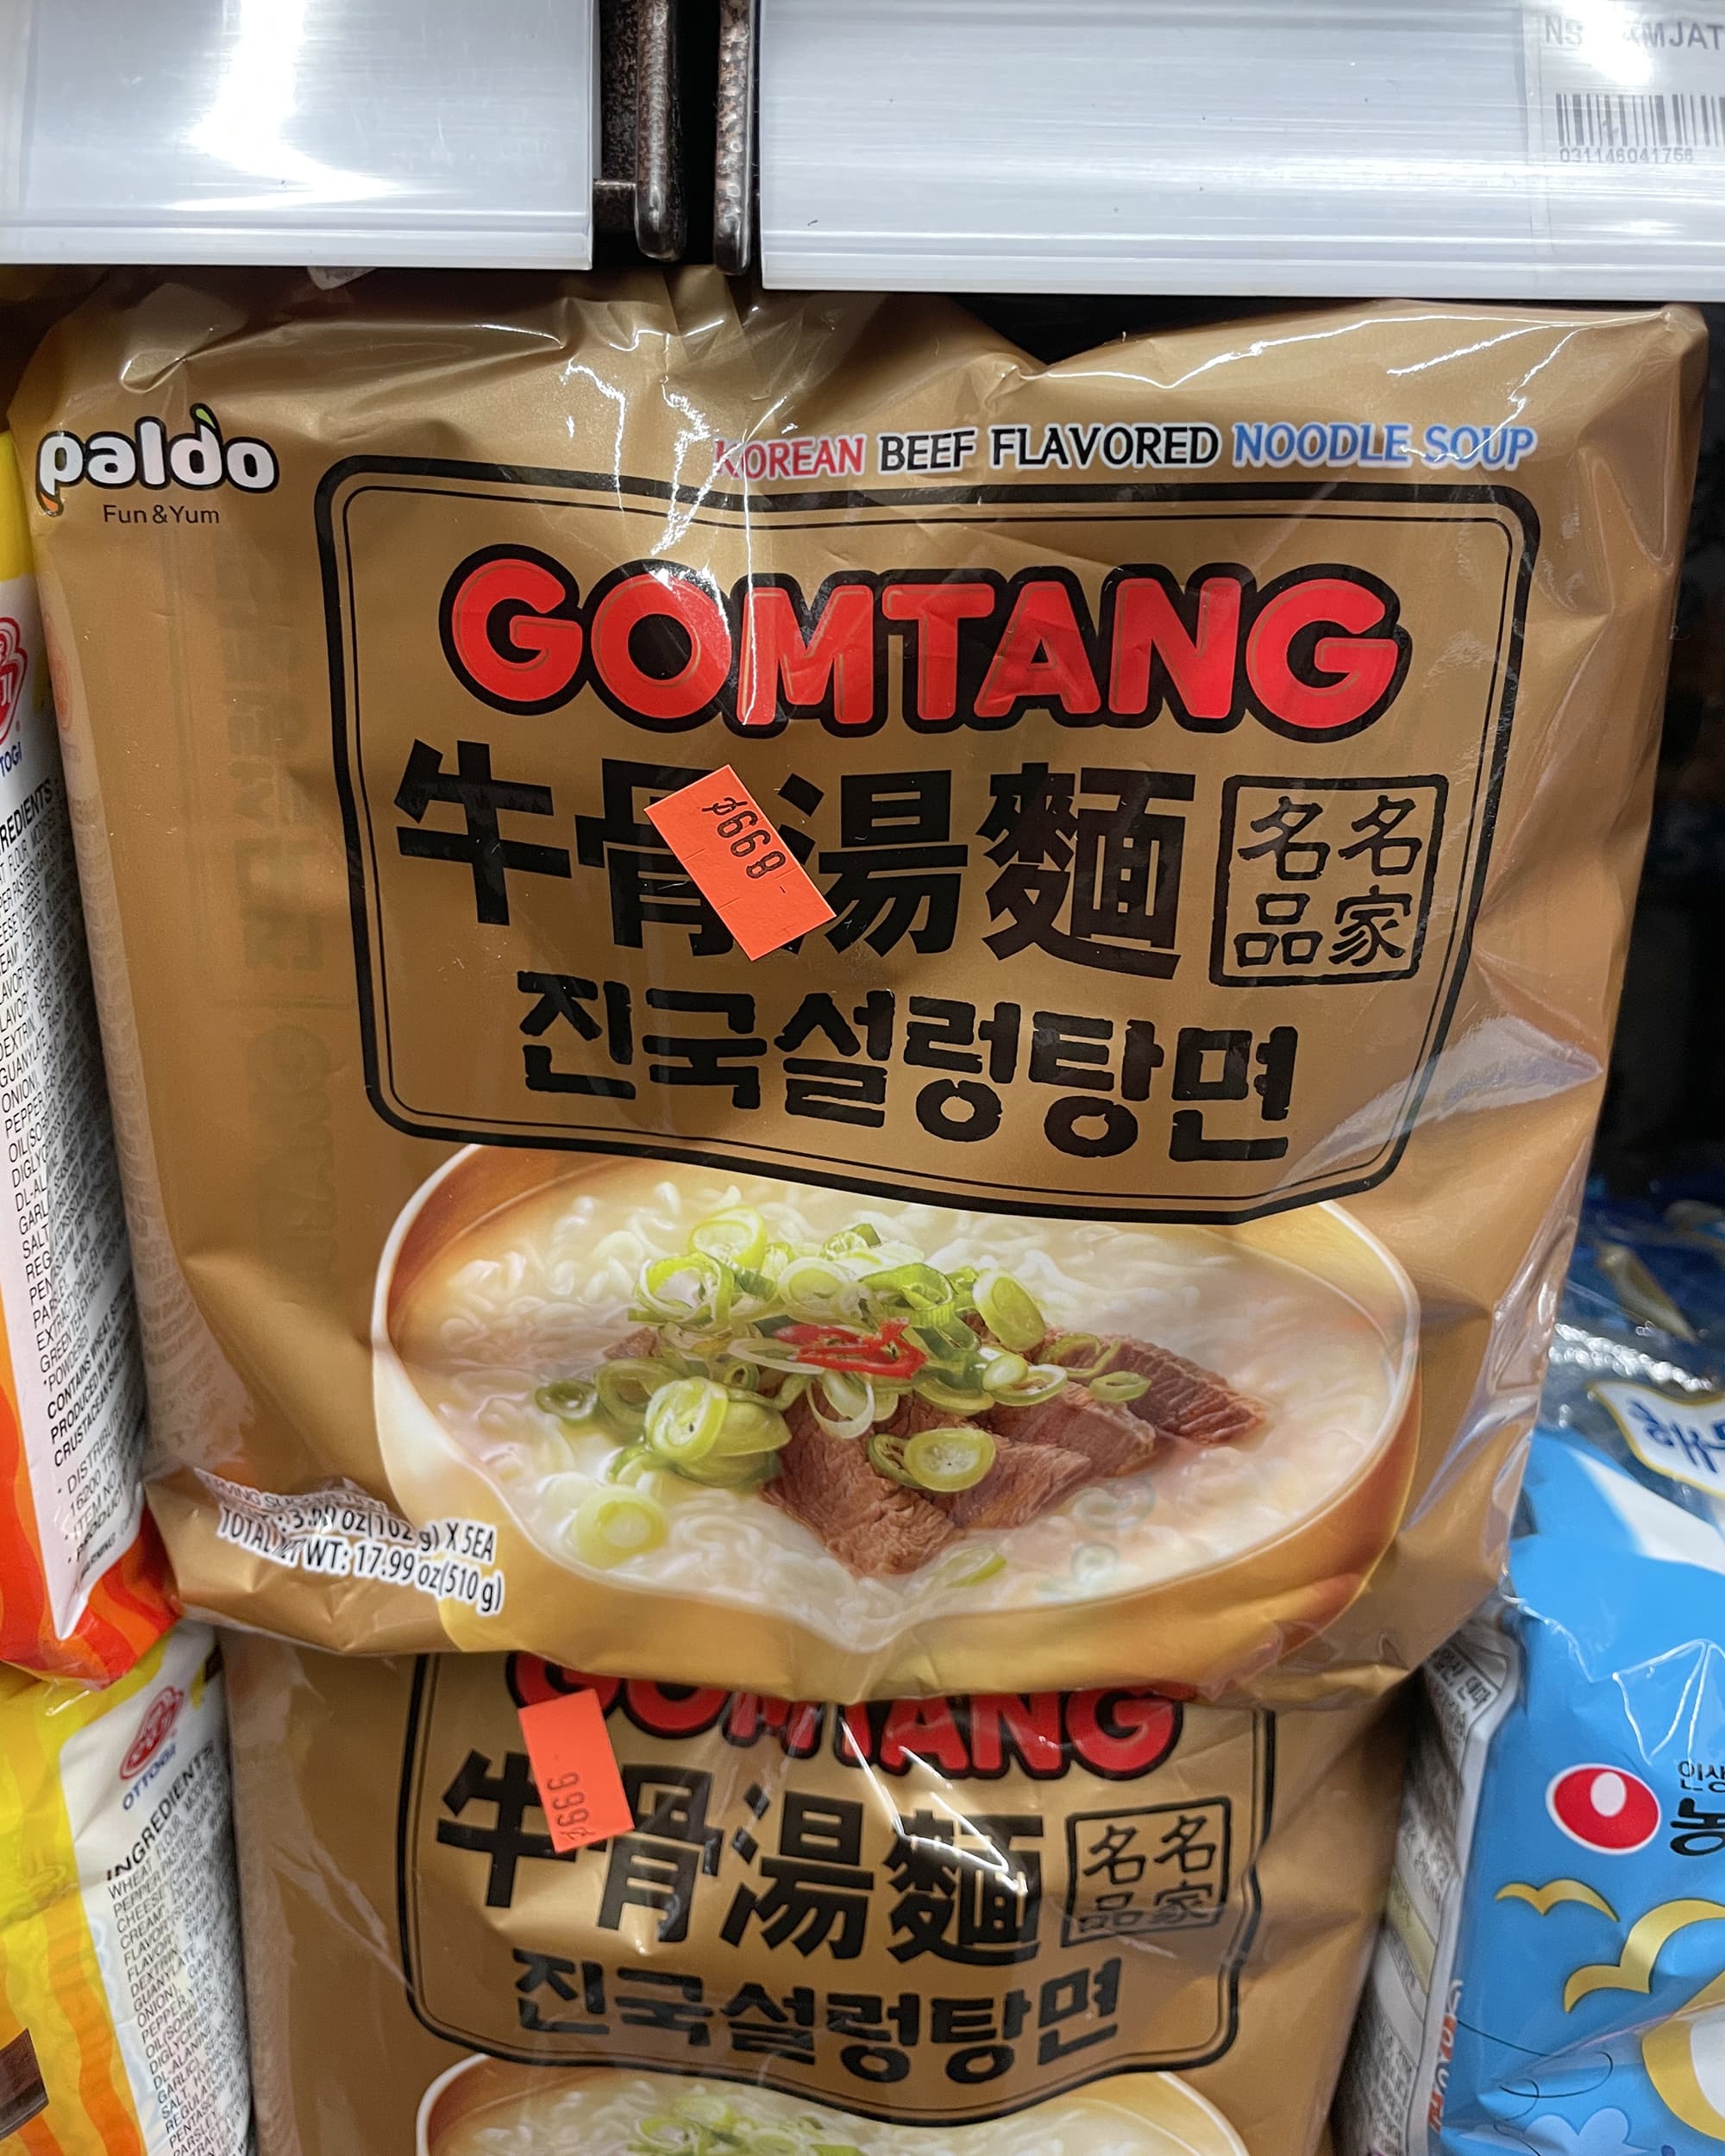 Top 4 Vegan Instant Ramen Brands in Korea